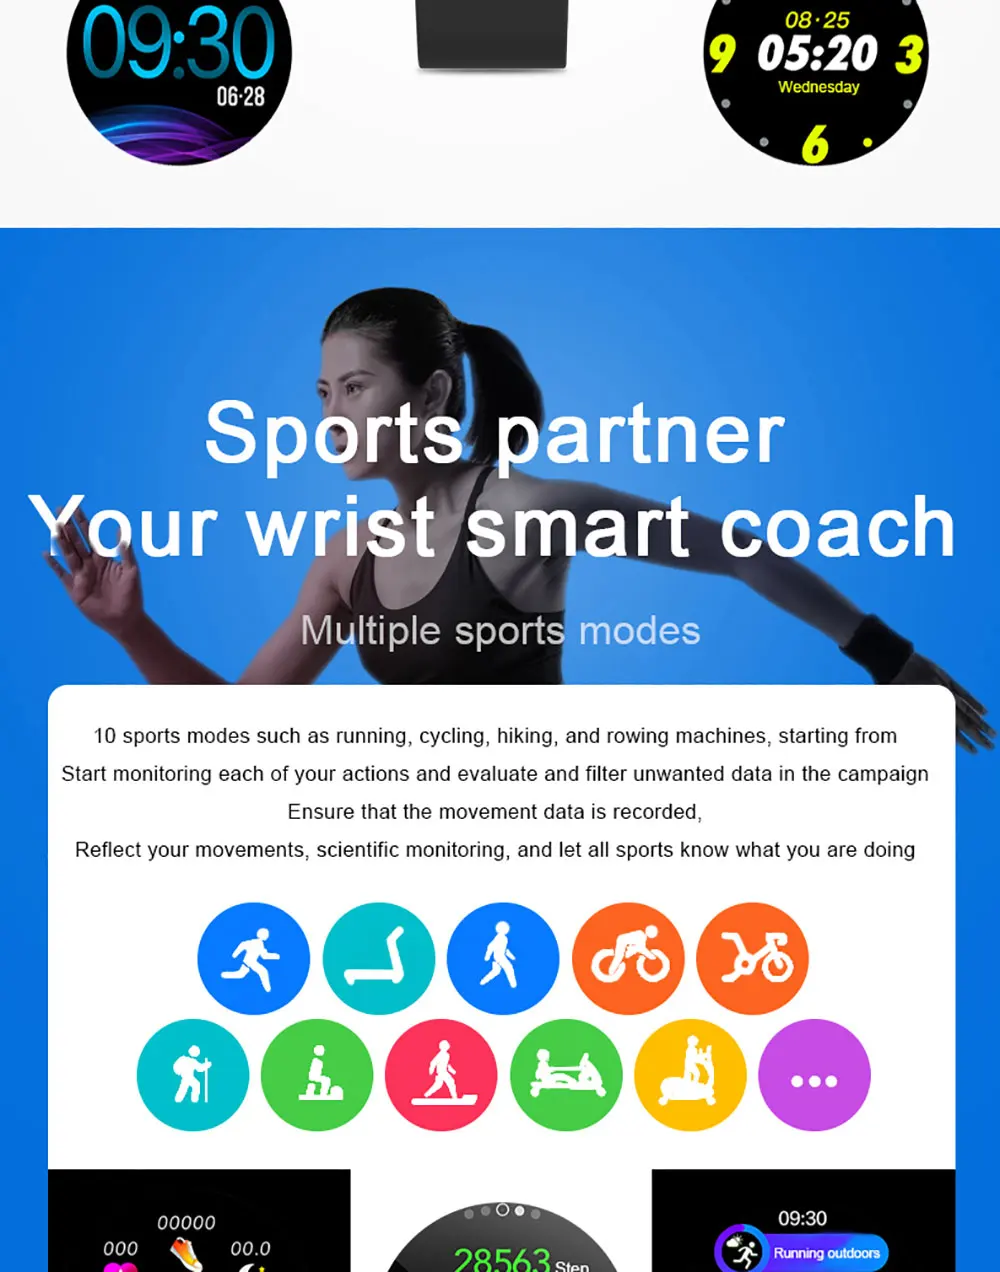 KSUN KSR911 спортивные Смарт-часы для мужчин и женщин IP68 Водонепроницаемые для телефона Android IOS фитнес-Браслет Модные умные часы подарок часы